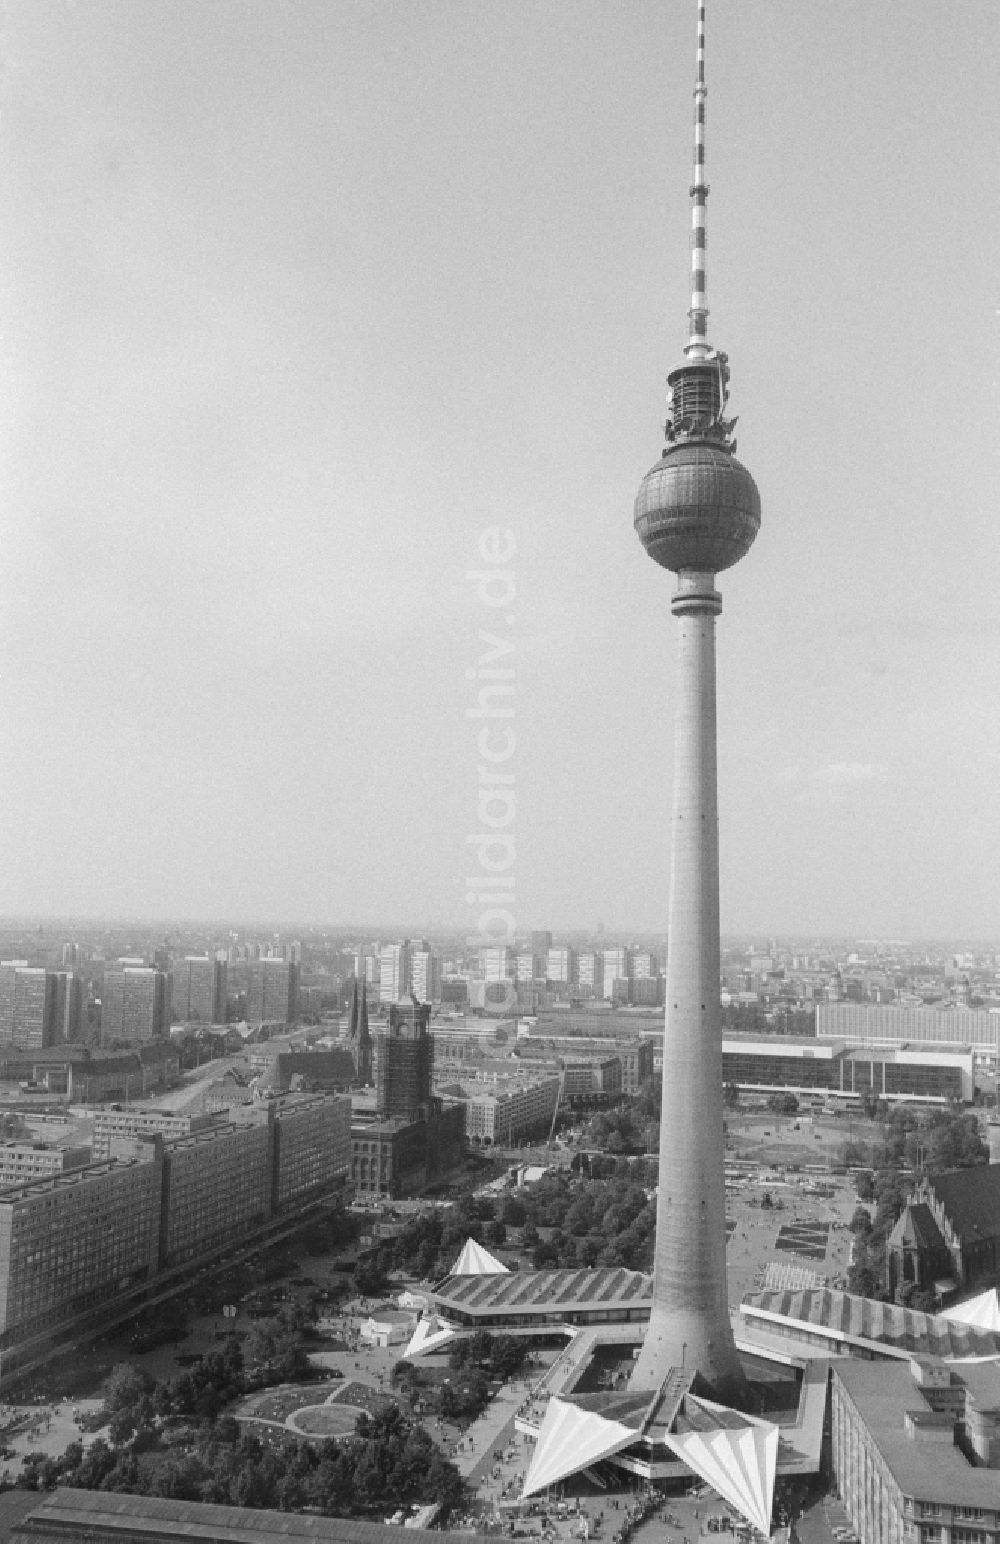 DDR-Bildarchiv: Berlin - Fernsehturm in Berlin, der ehemaligen Hauptstadt der DDR, Deutsche Demokratische Republik